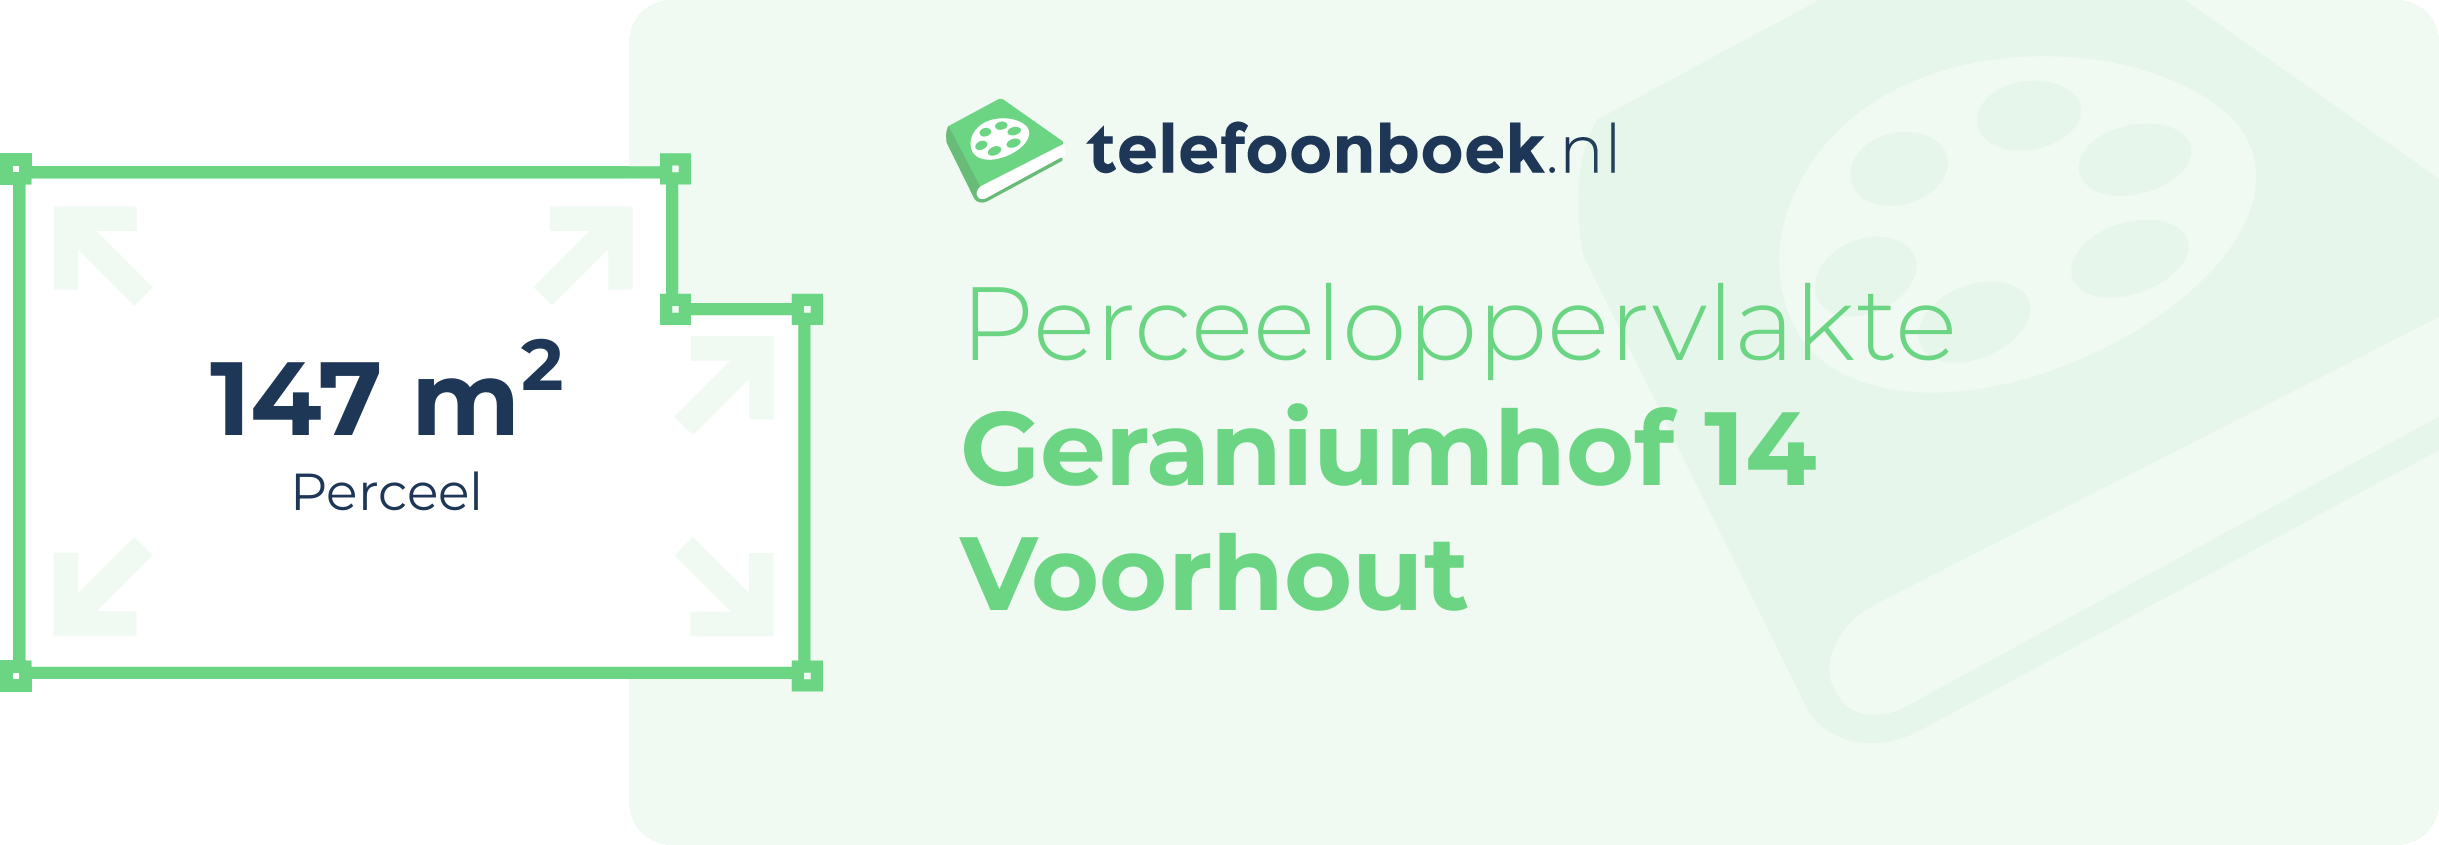 Perceeloppervlakte Geraniumhof 14 Voorhout